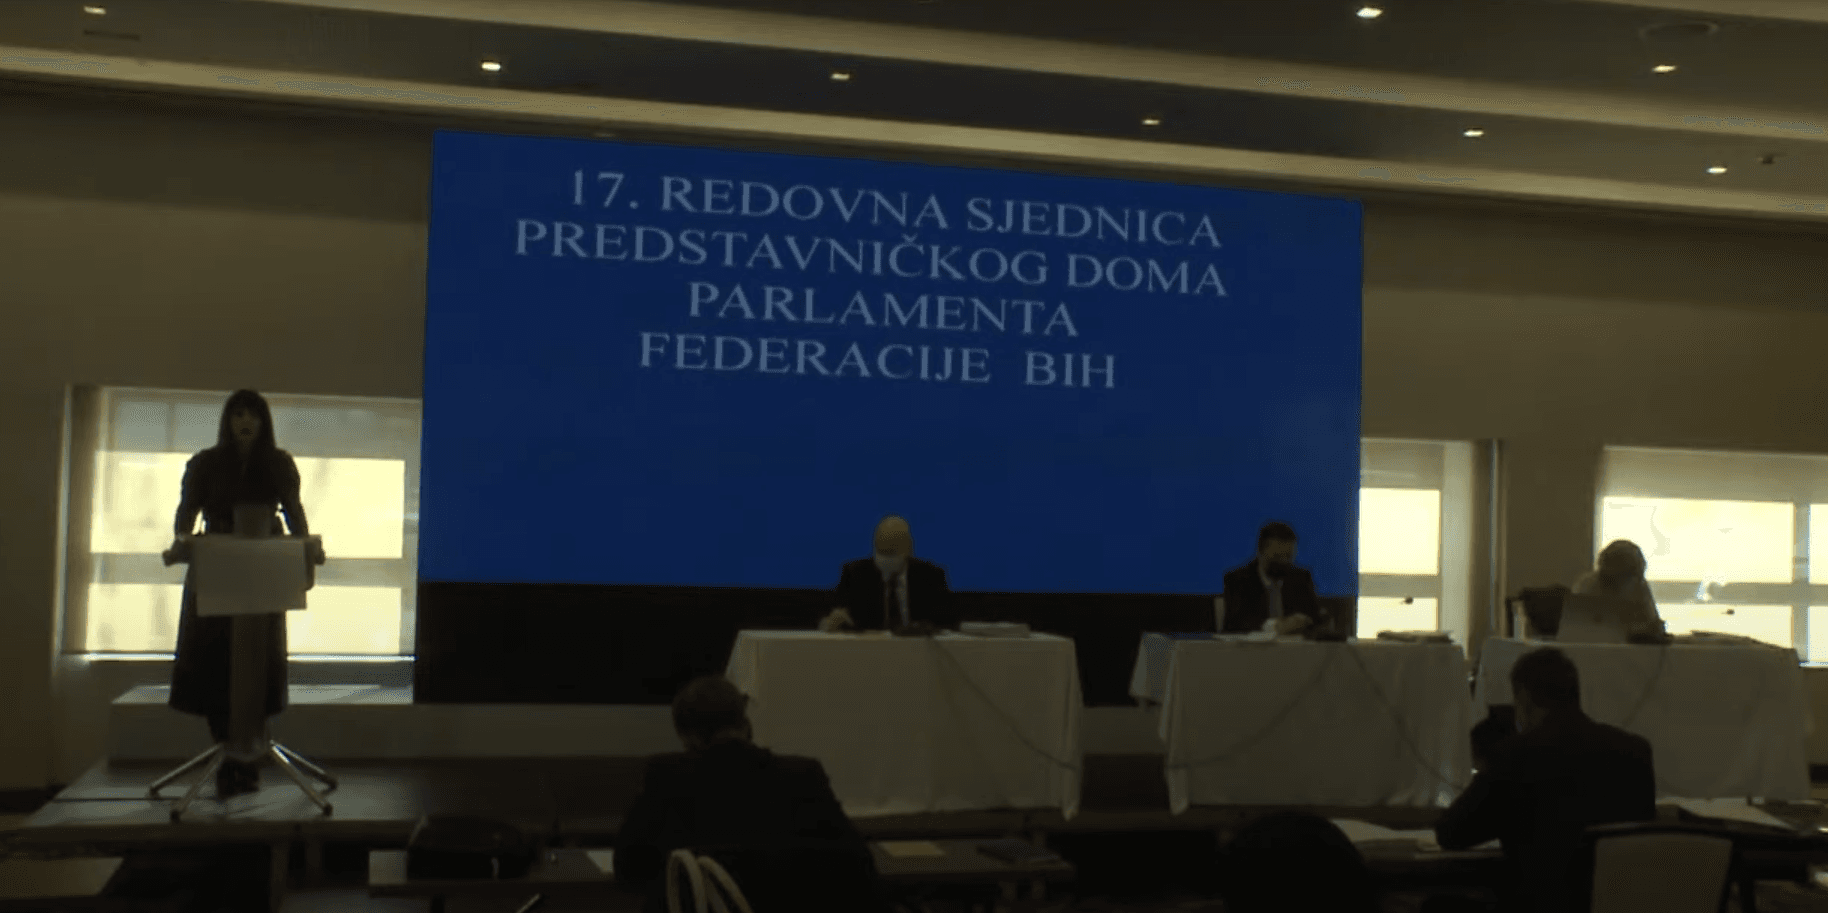 Parlament FBiH: Opozicija kritikovala Prijedlog budžeta - Avaz